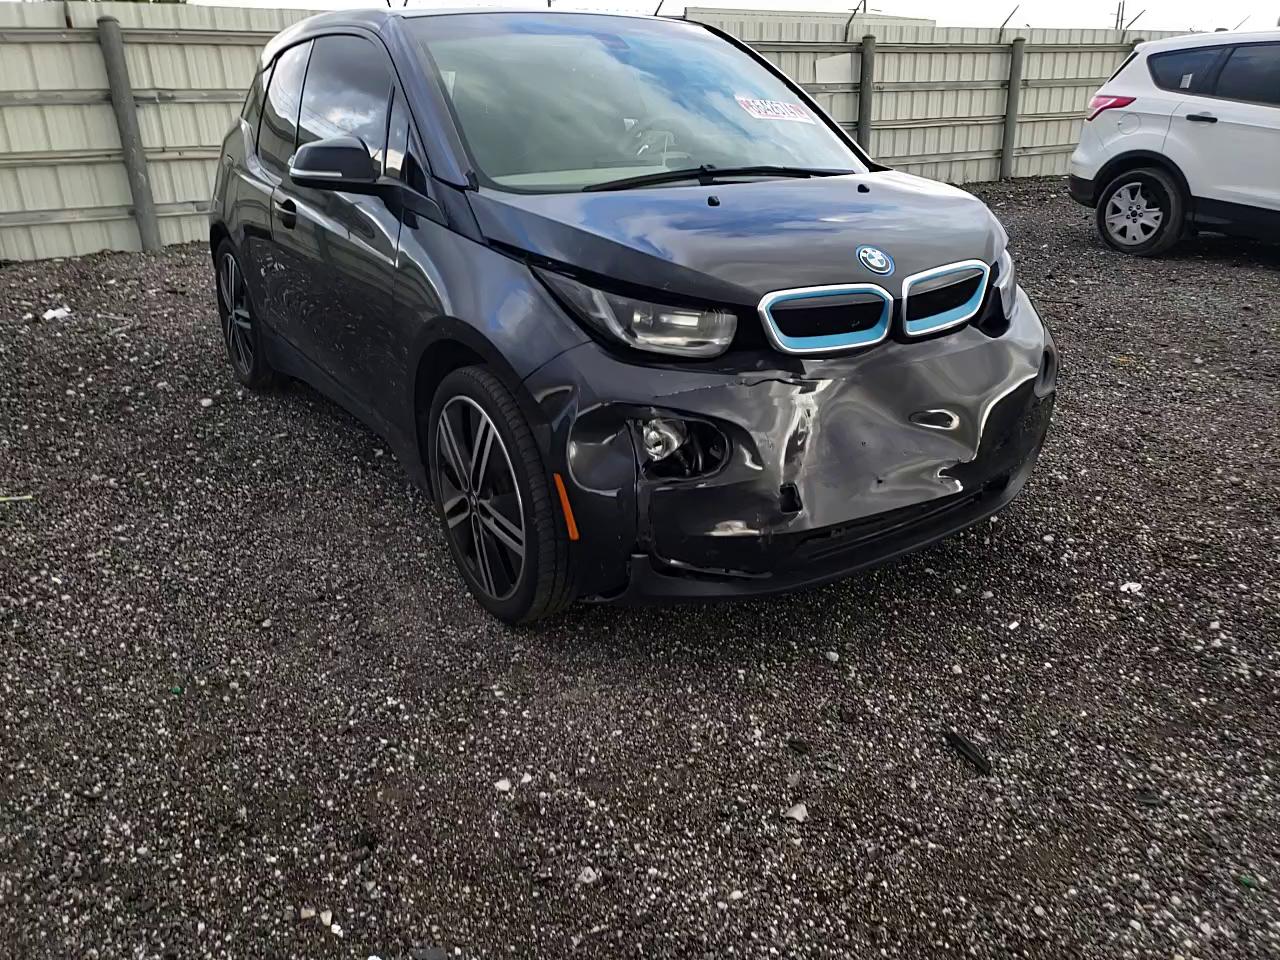 BMW I3 bev 2014